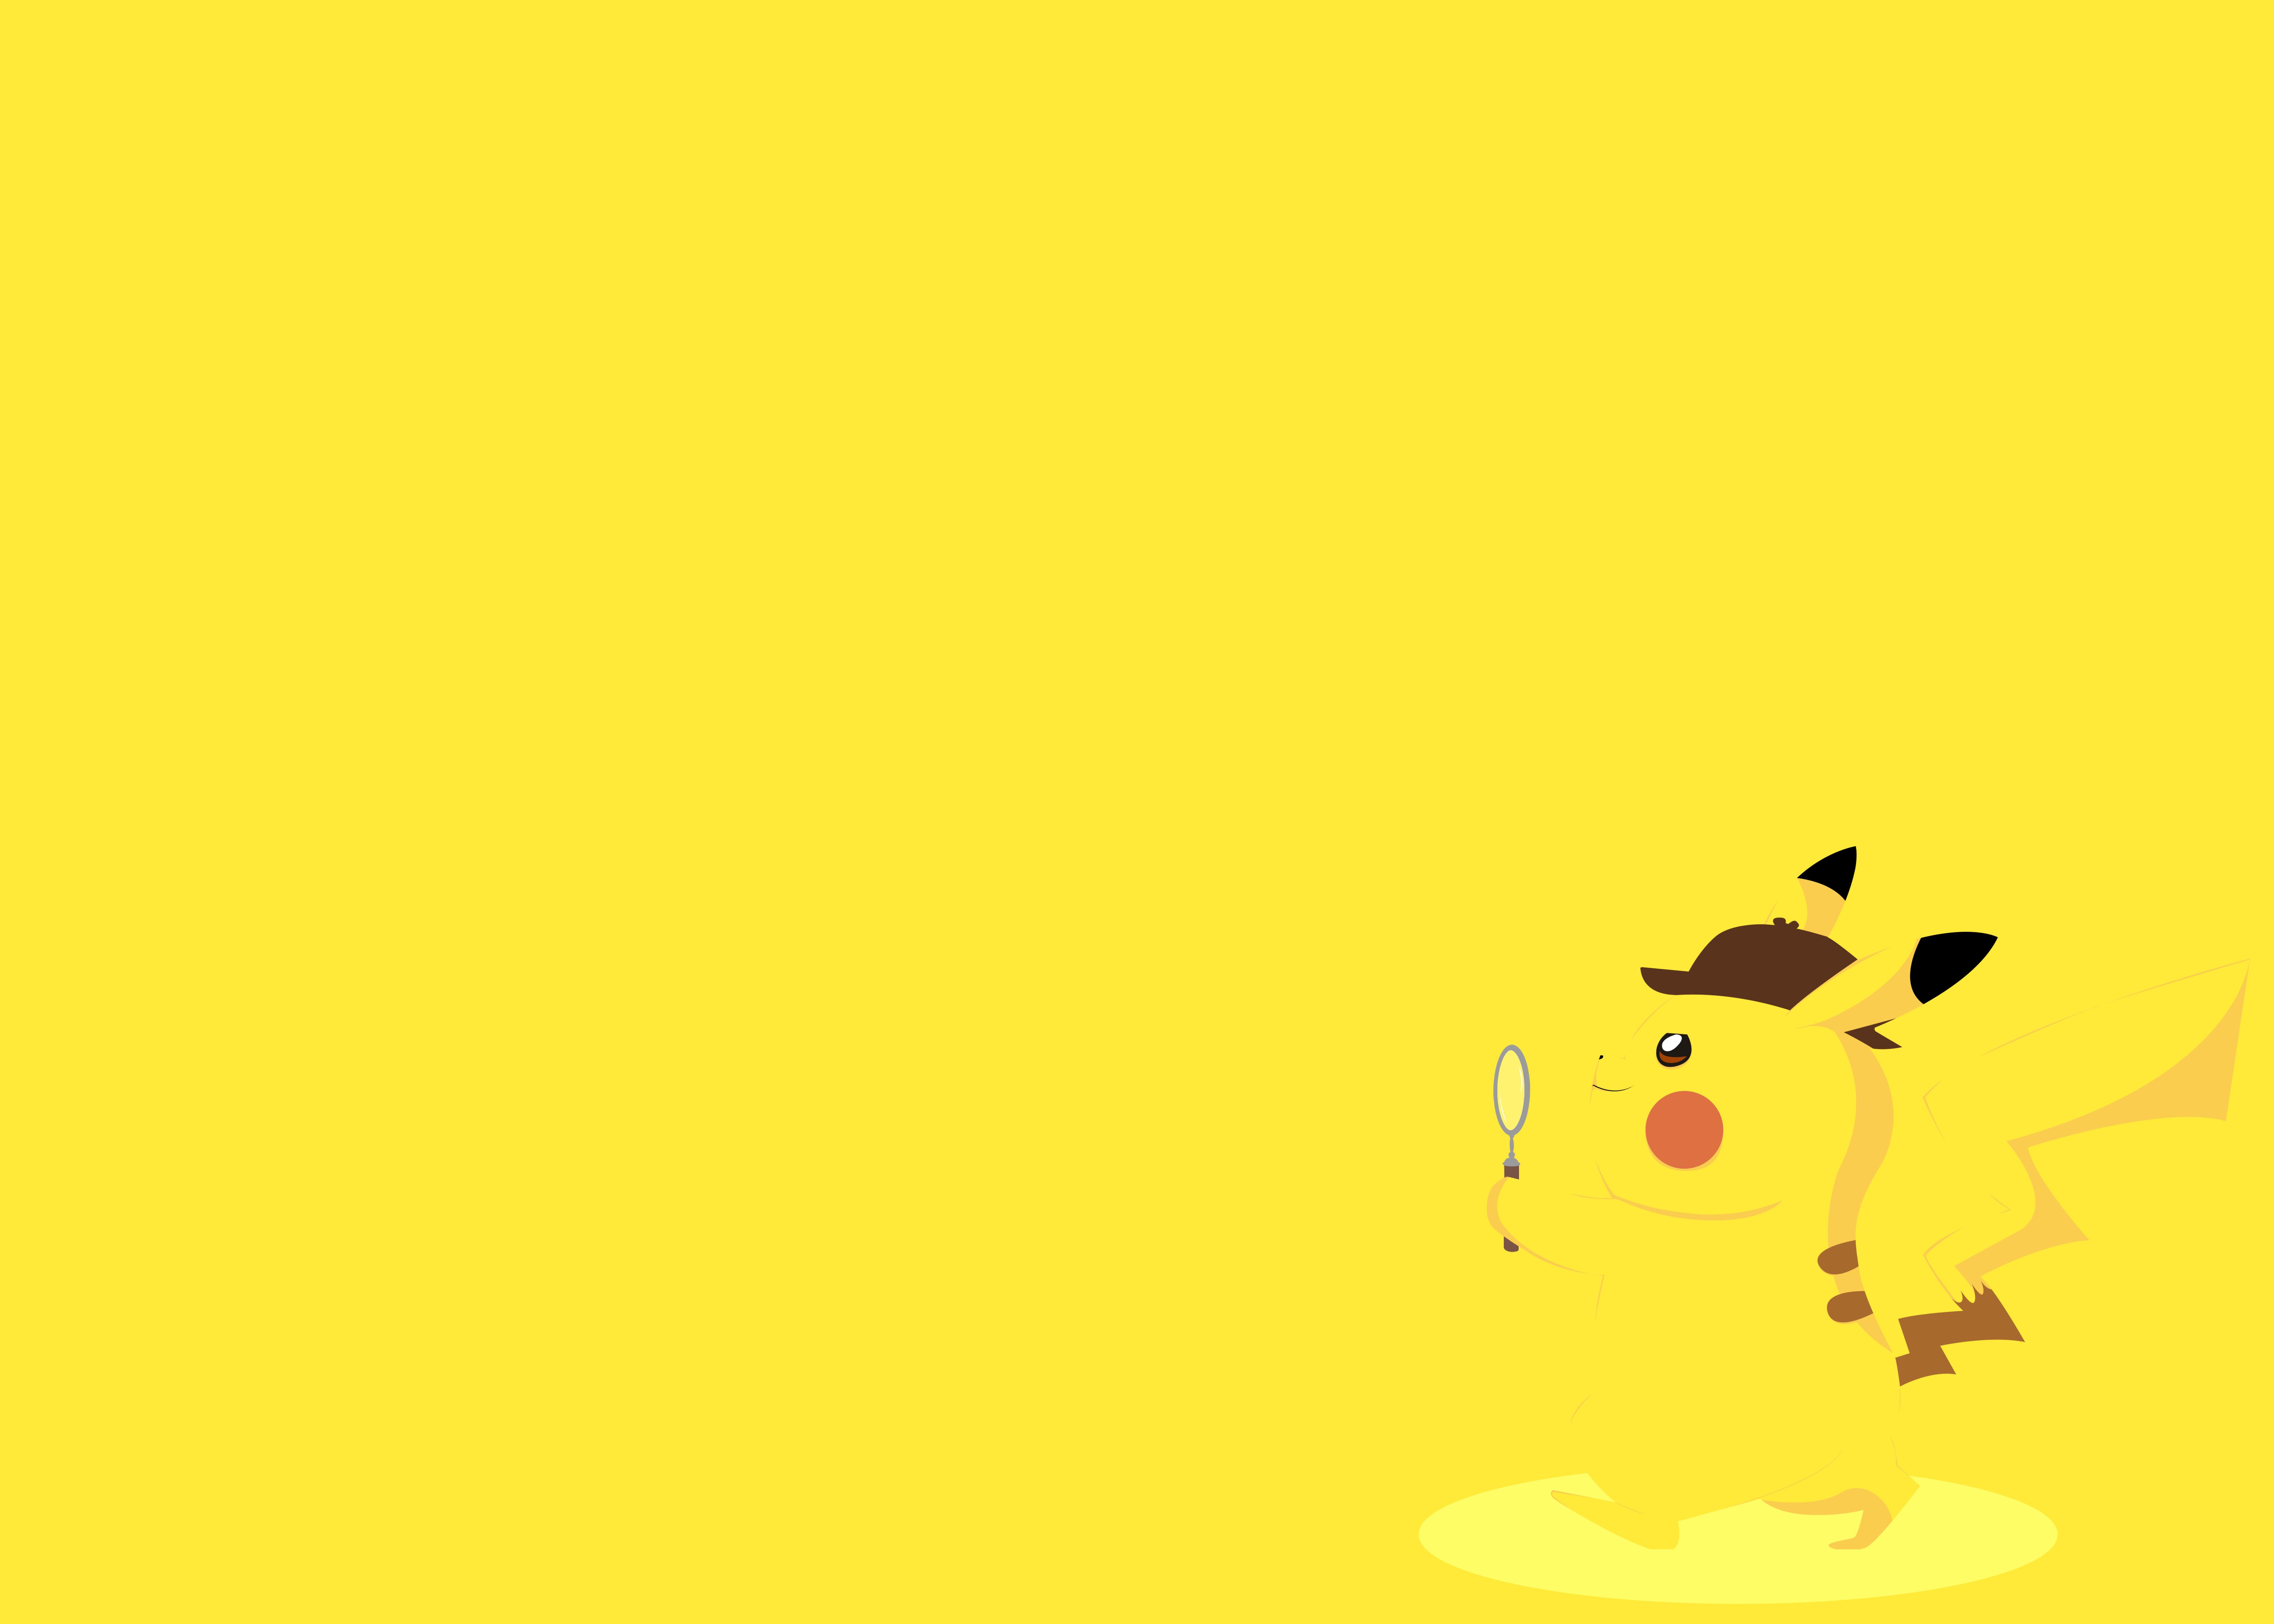 Pikachu Minimalist PokeMon Wallpapers